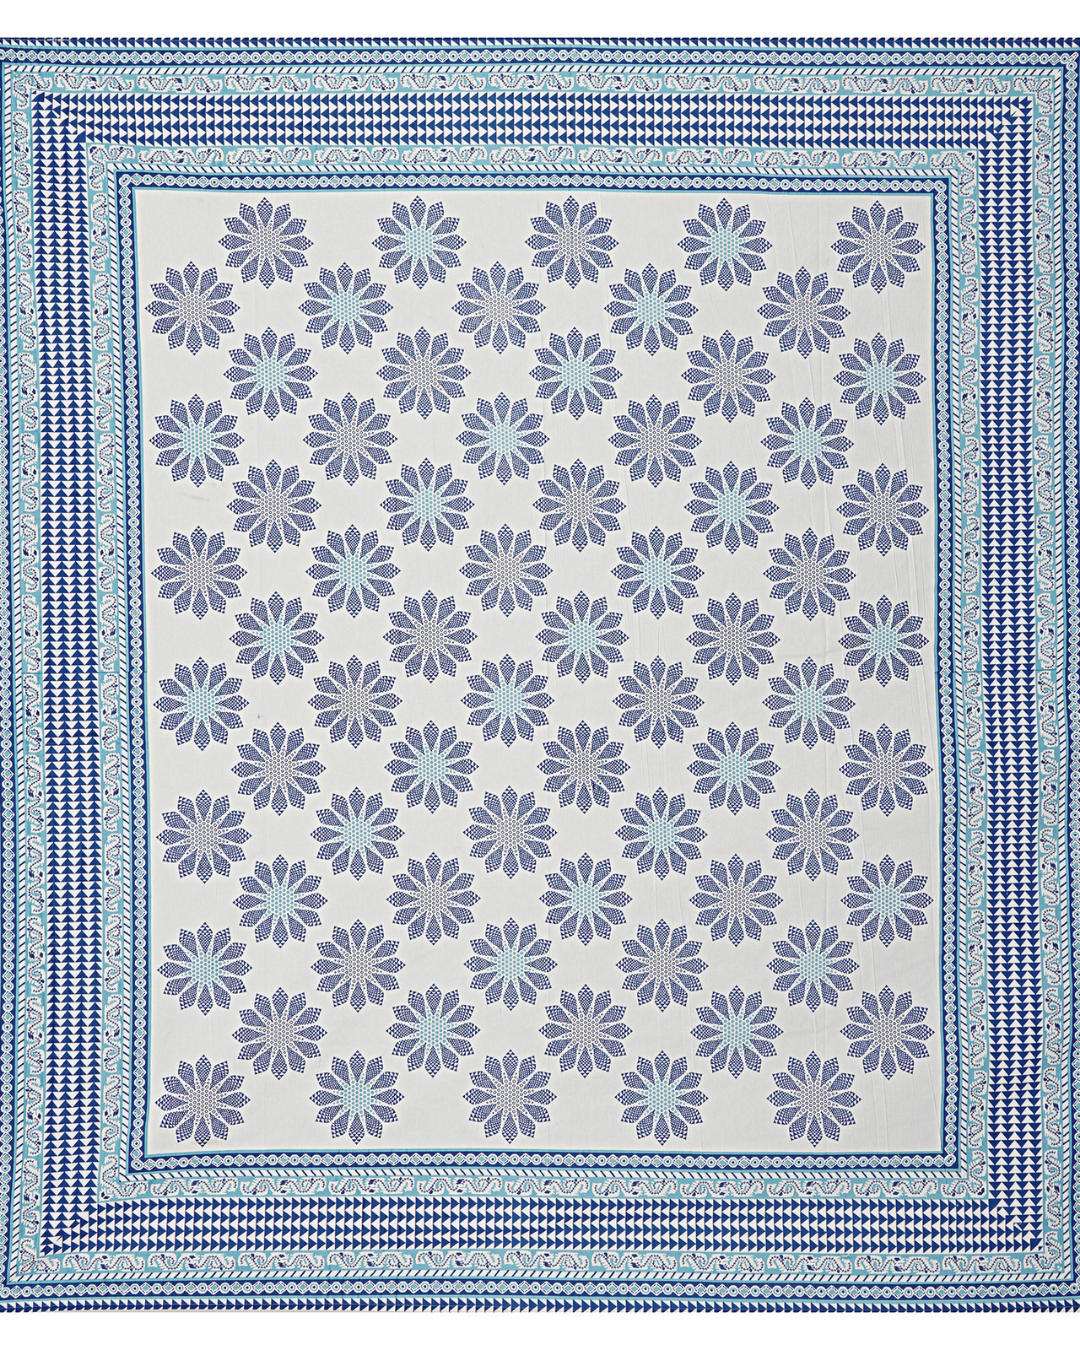 Marrakesh Bedsheet in Sunflower Blue